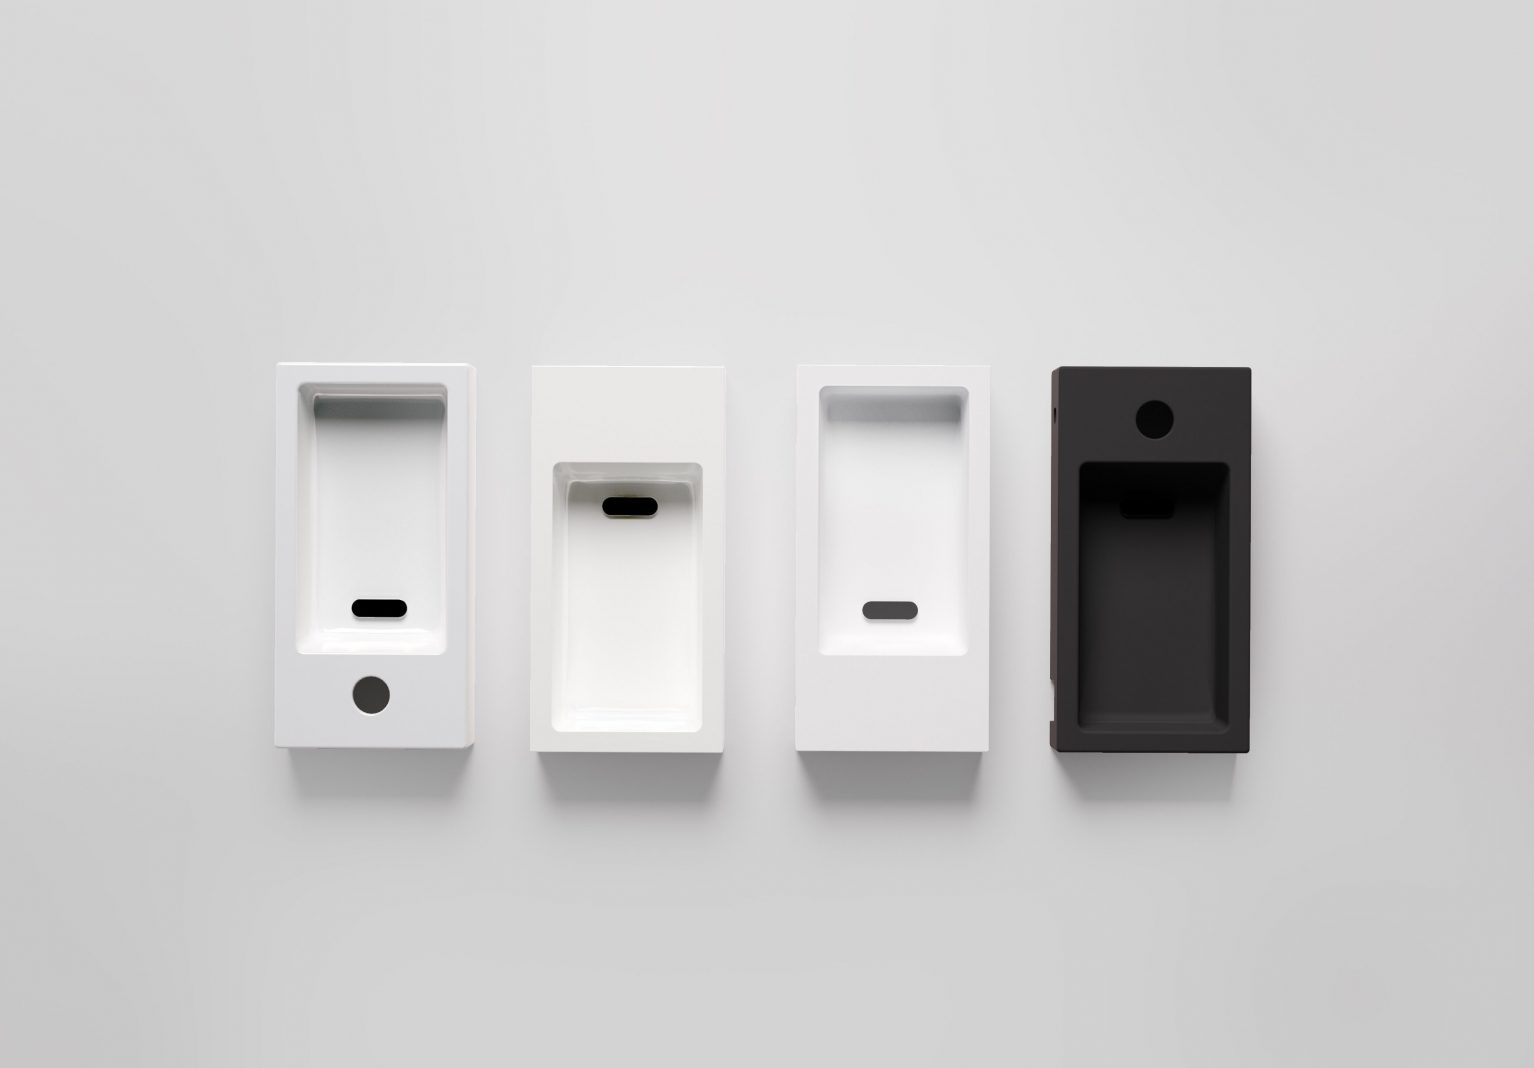 fontein-wastafel-mat-wit-zwart-toilet-badkamer-luxe-sanitair-Flush-3-links-clou-composiet-keramiek-mineral-marmer-aluite-voorbewerkt-kraangat-36cm-corian